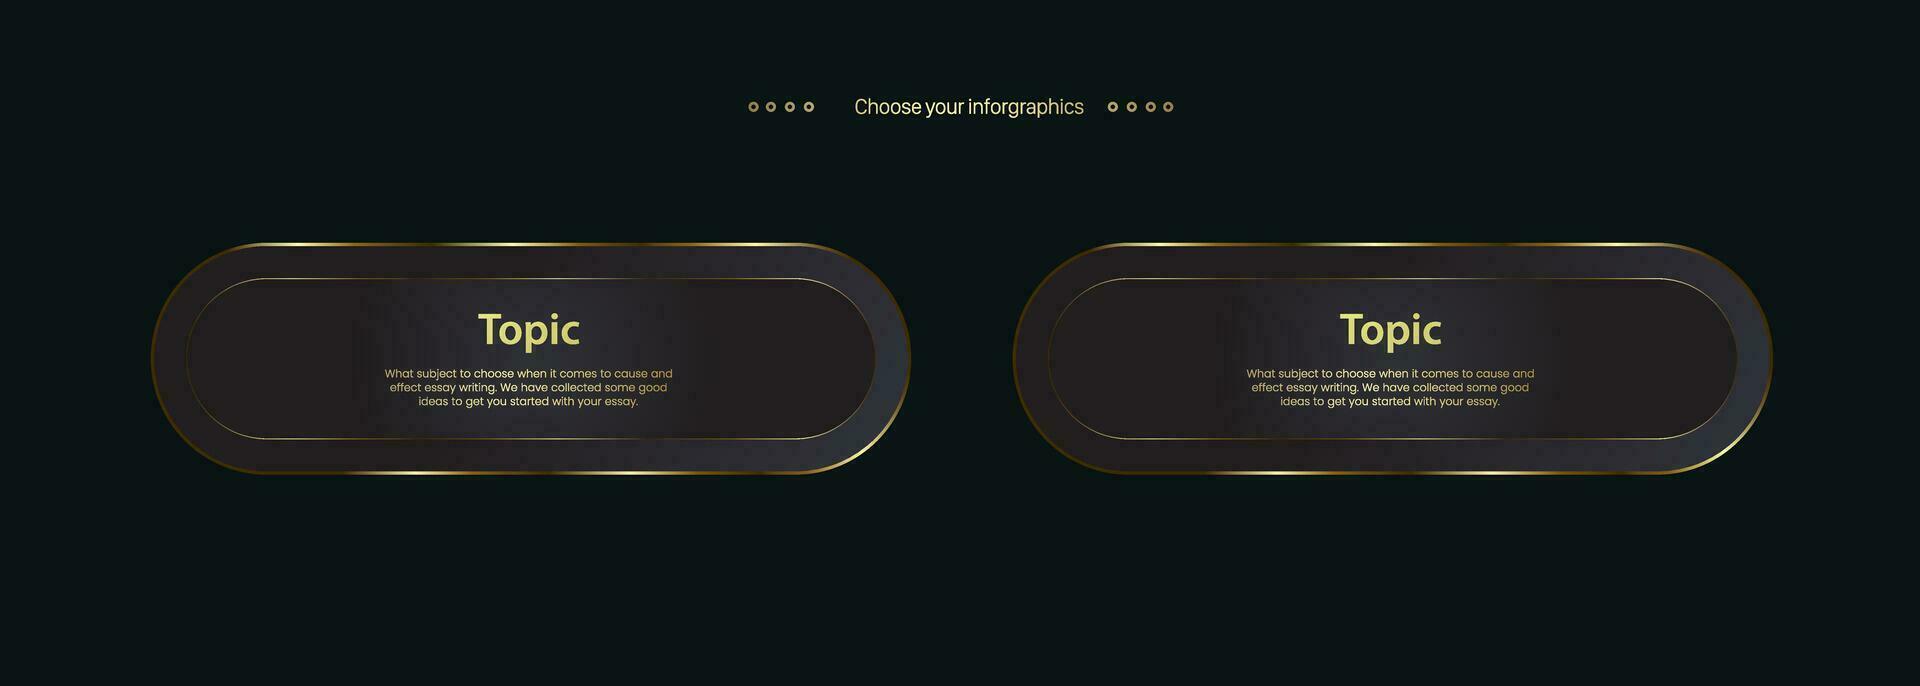 dos lujo de múltiples fines infografía circulo botones y 2 dorado modelo con opción y prima oro elegante botón vector